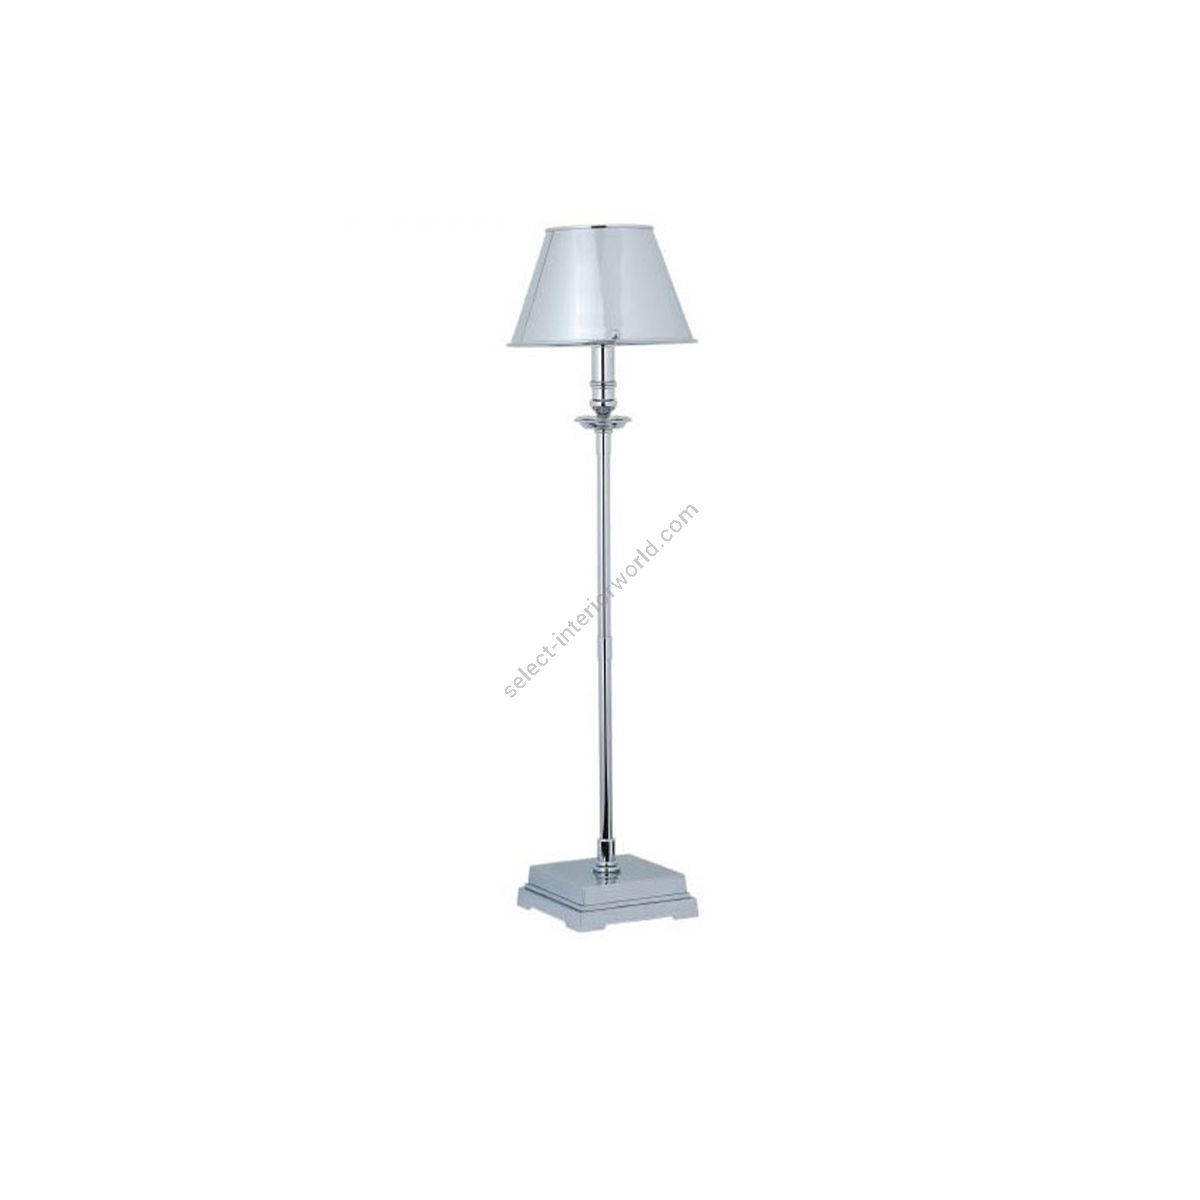 Estro / Attractive Metal Table Lamp / KURIA M 483